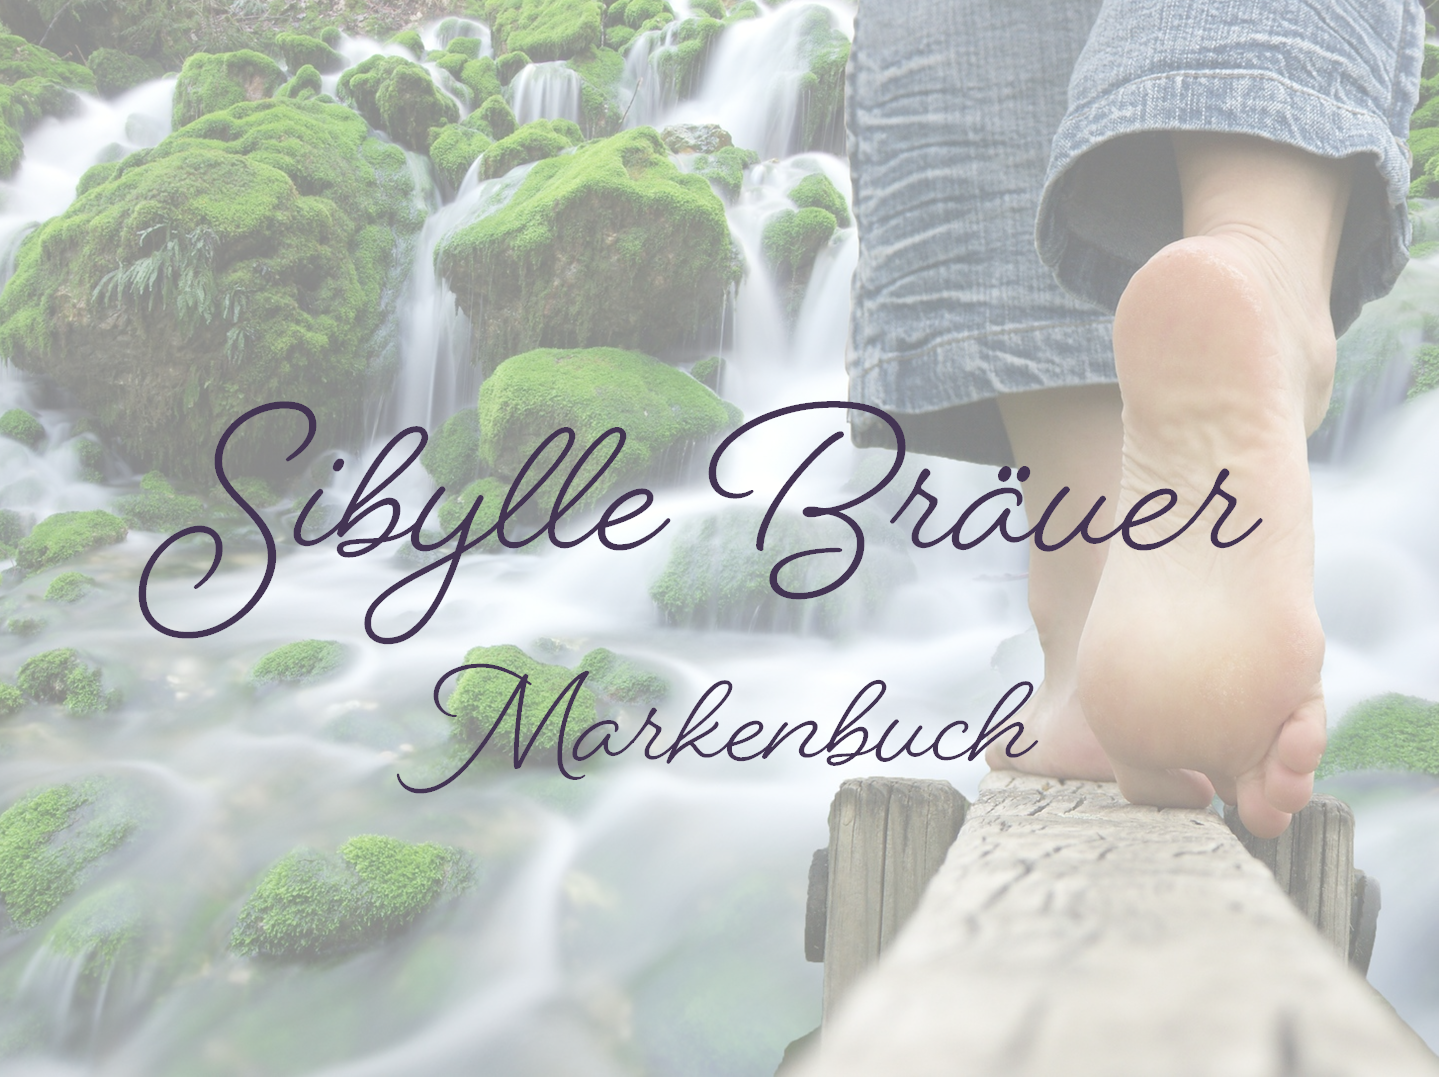 Das Brand & Bloom Brandingkonzept von Sibylle Bräuer